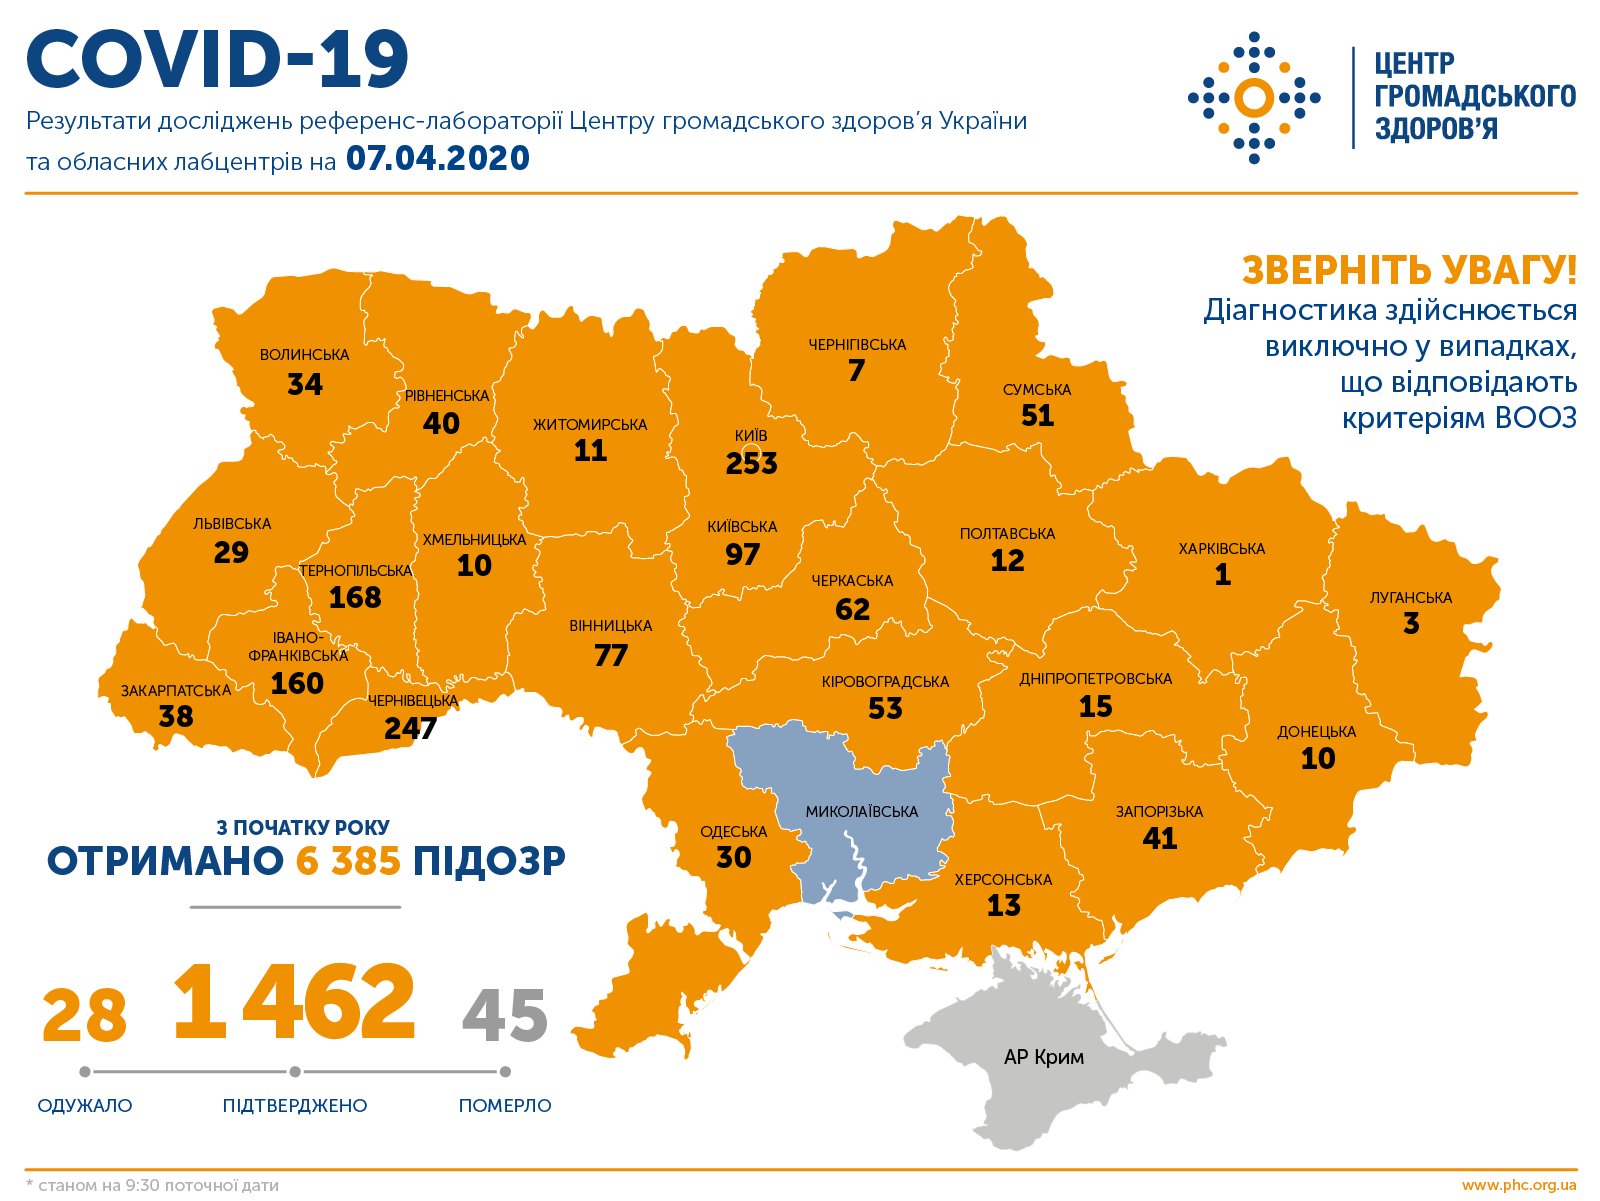 Центр громадського здоров’я України: підтверджено 1462 випадки COVID-19